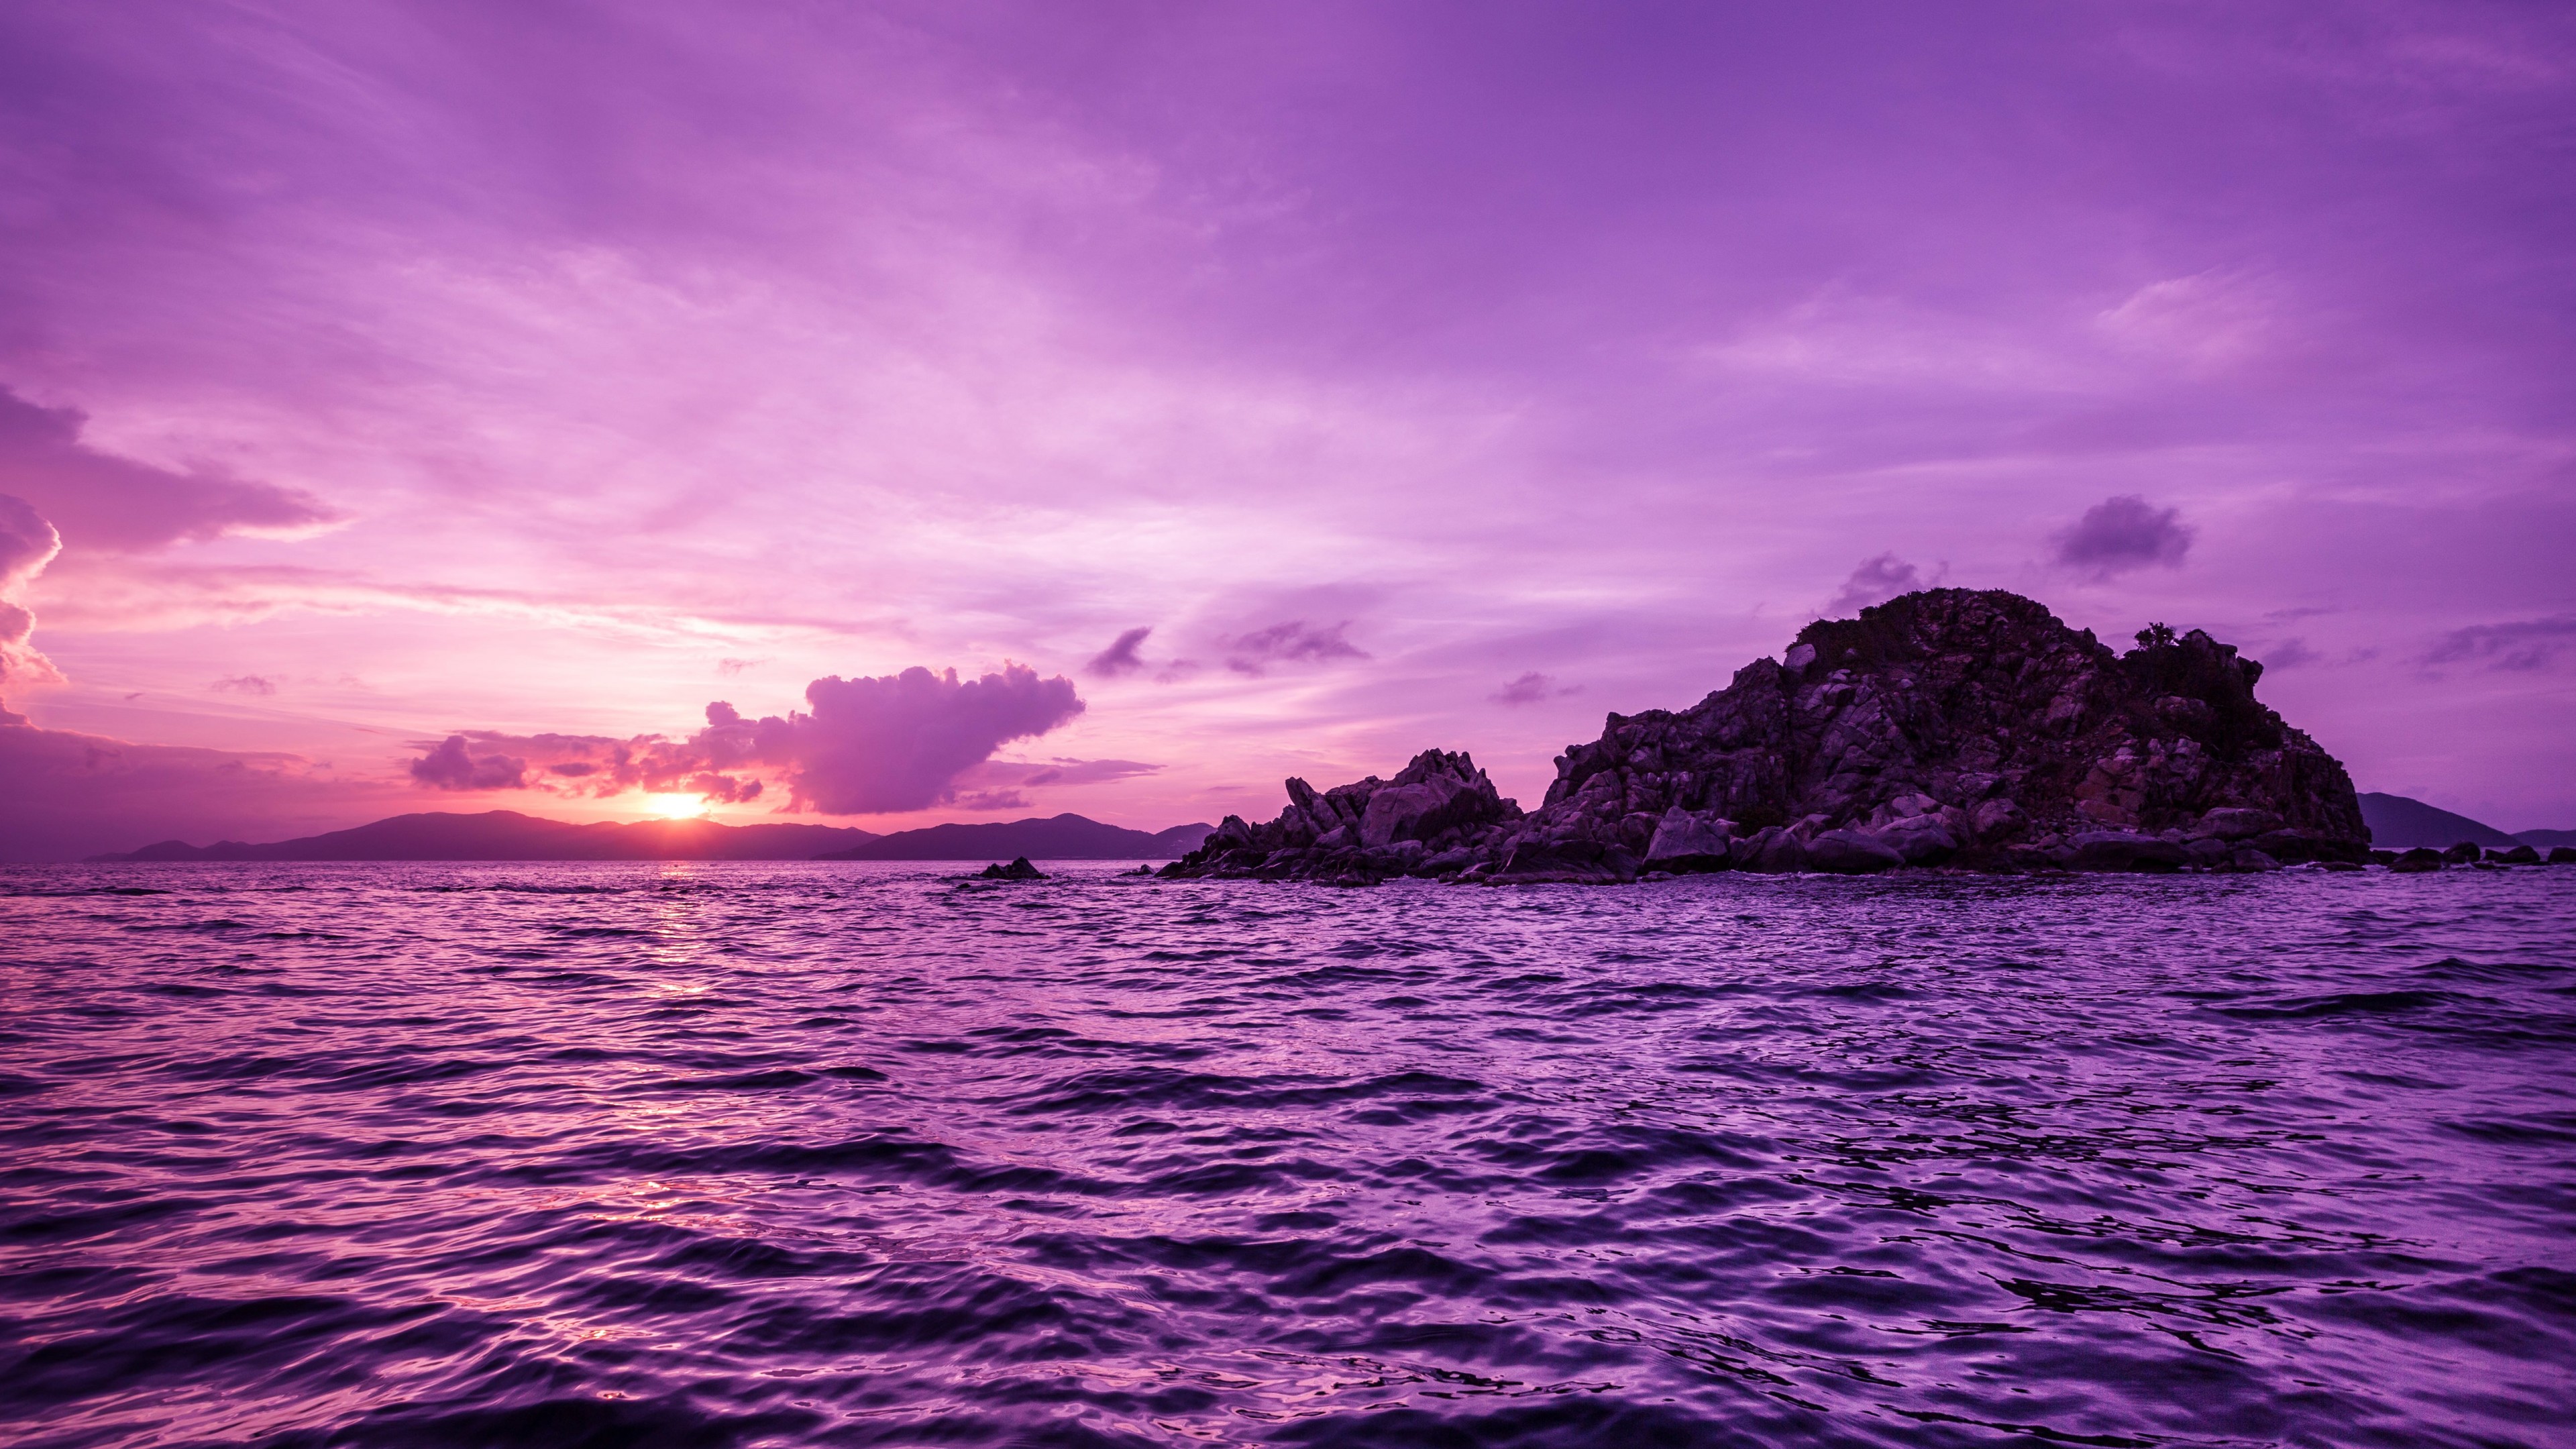 Pelican Island Sunset, British Virgin Islands Wallpaper for Desktop 4K 3840x2160